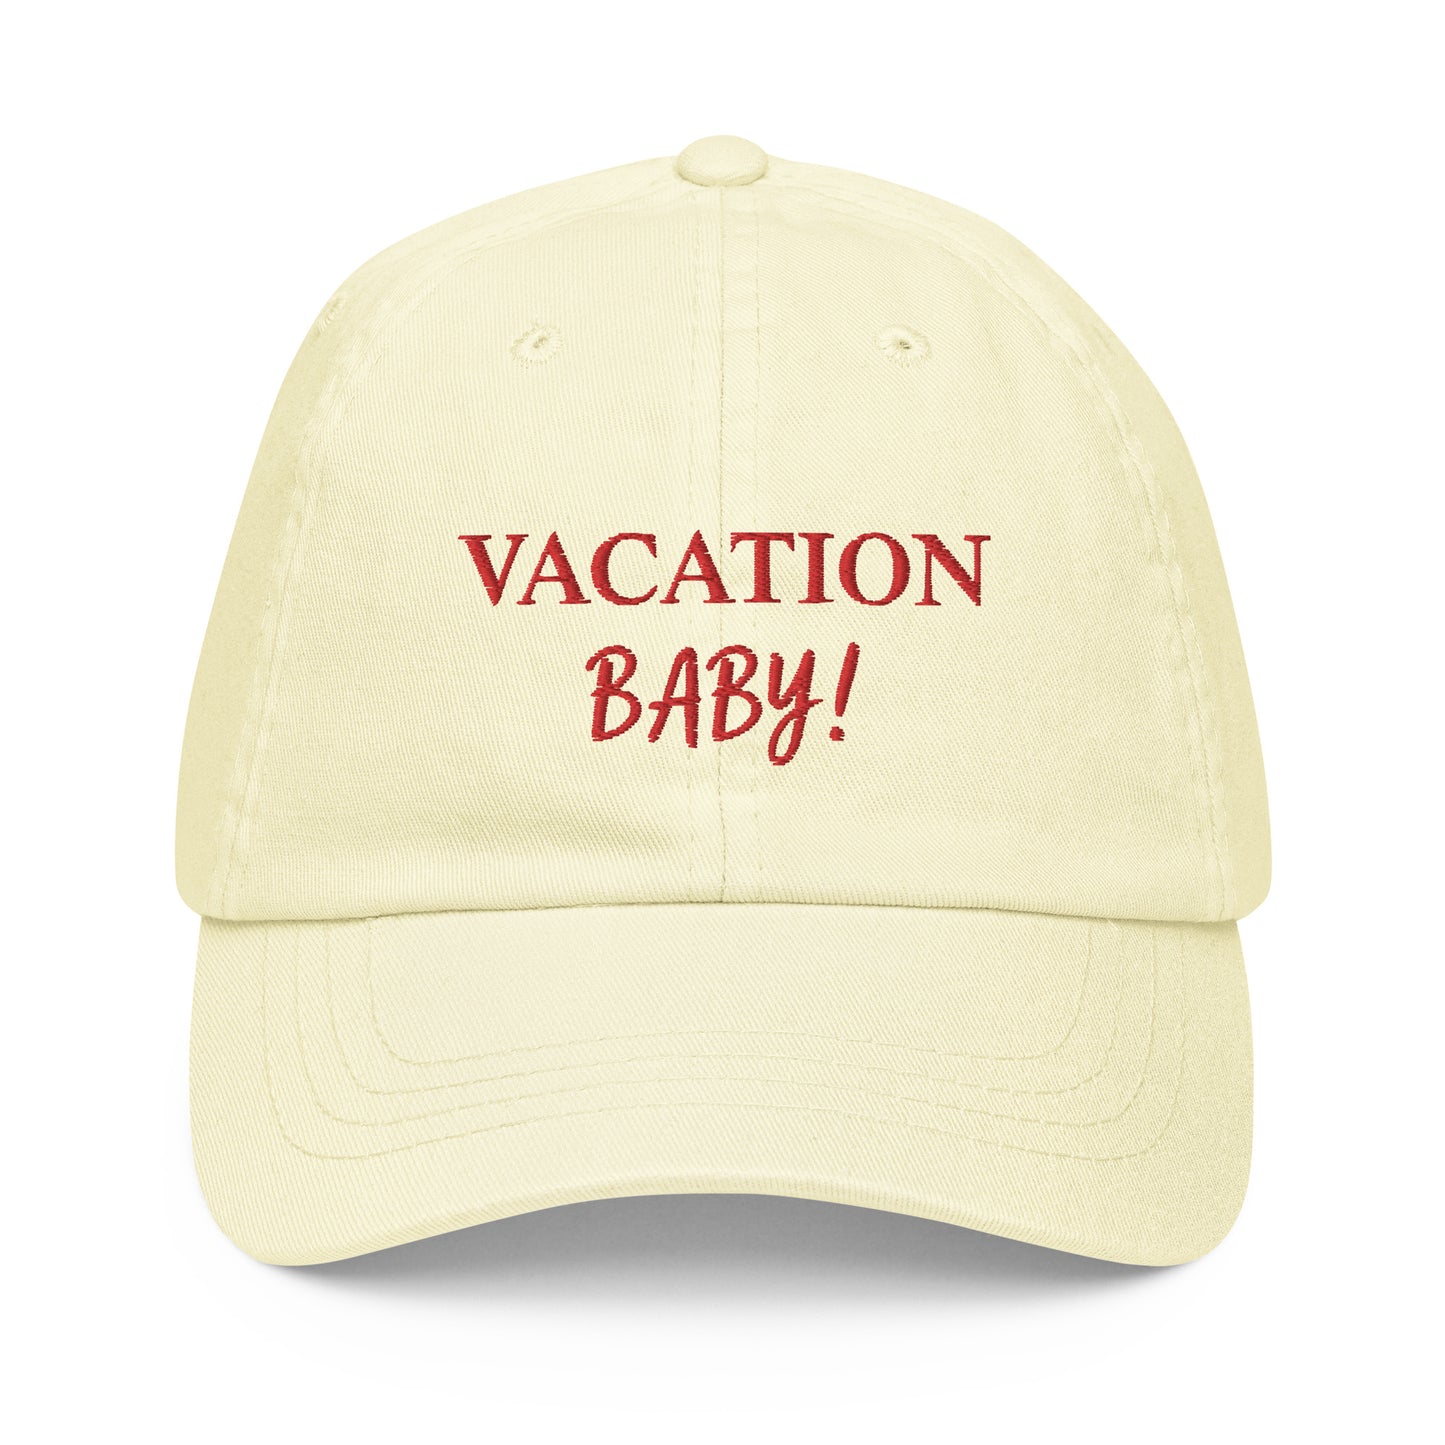 Vacation Baby! Cap